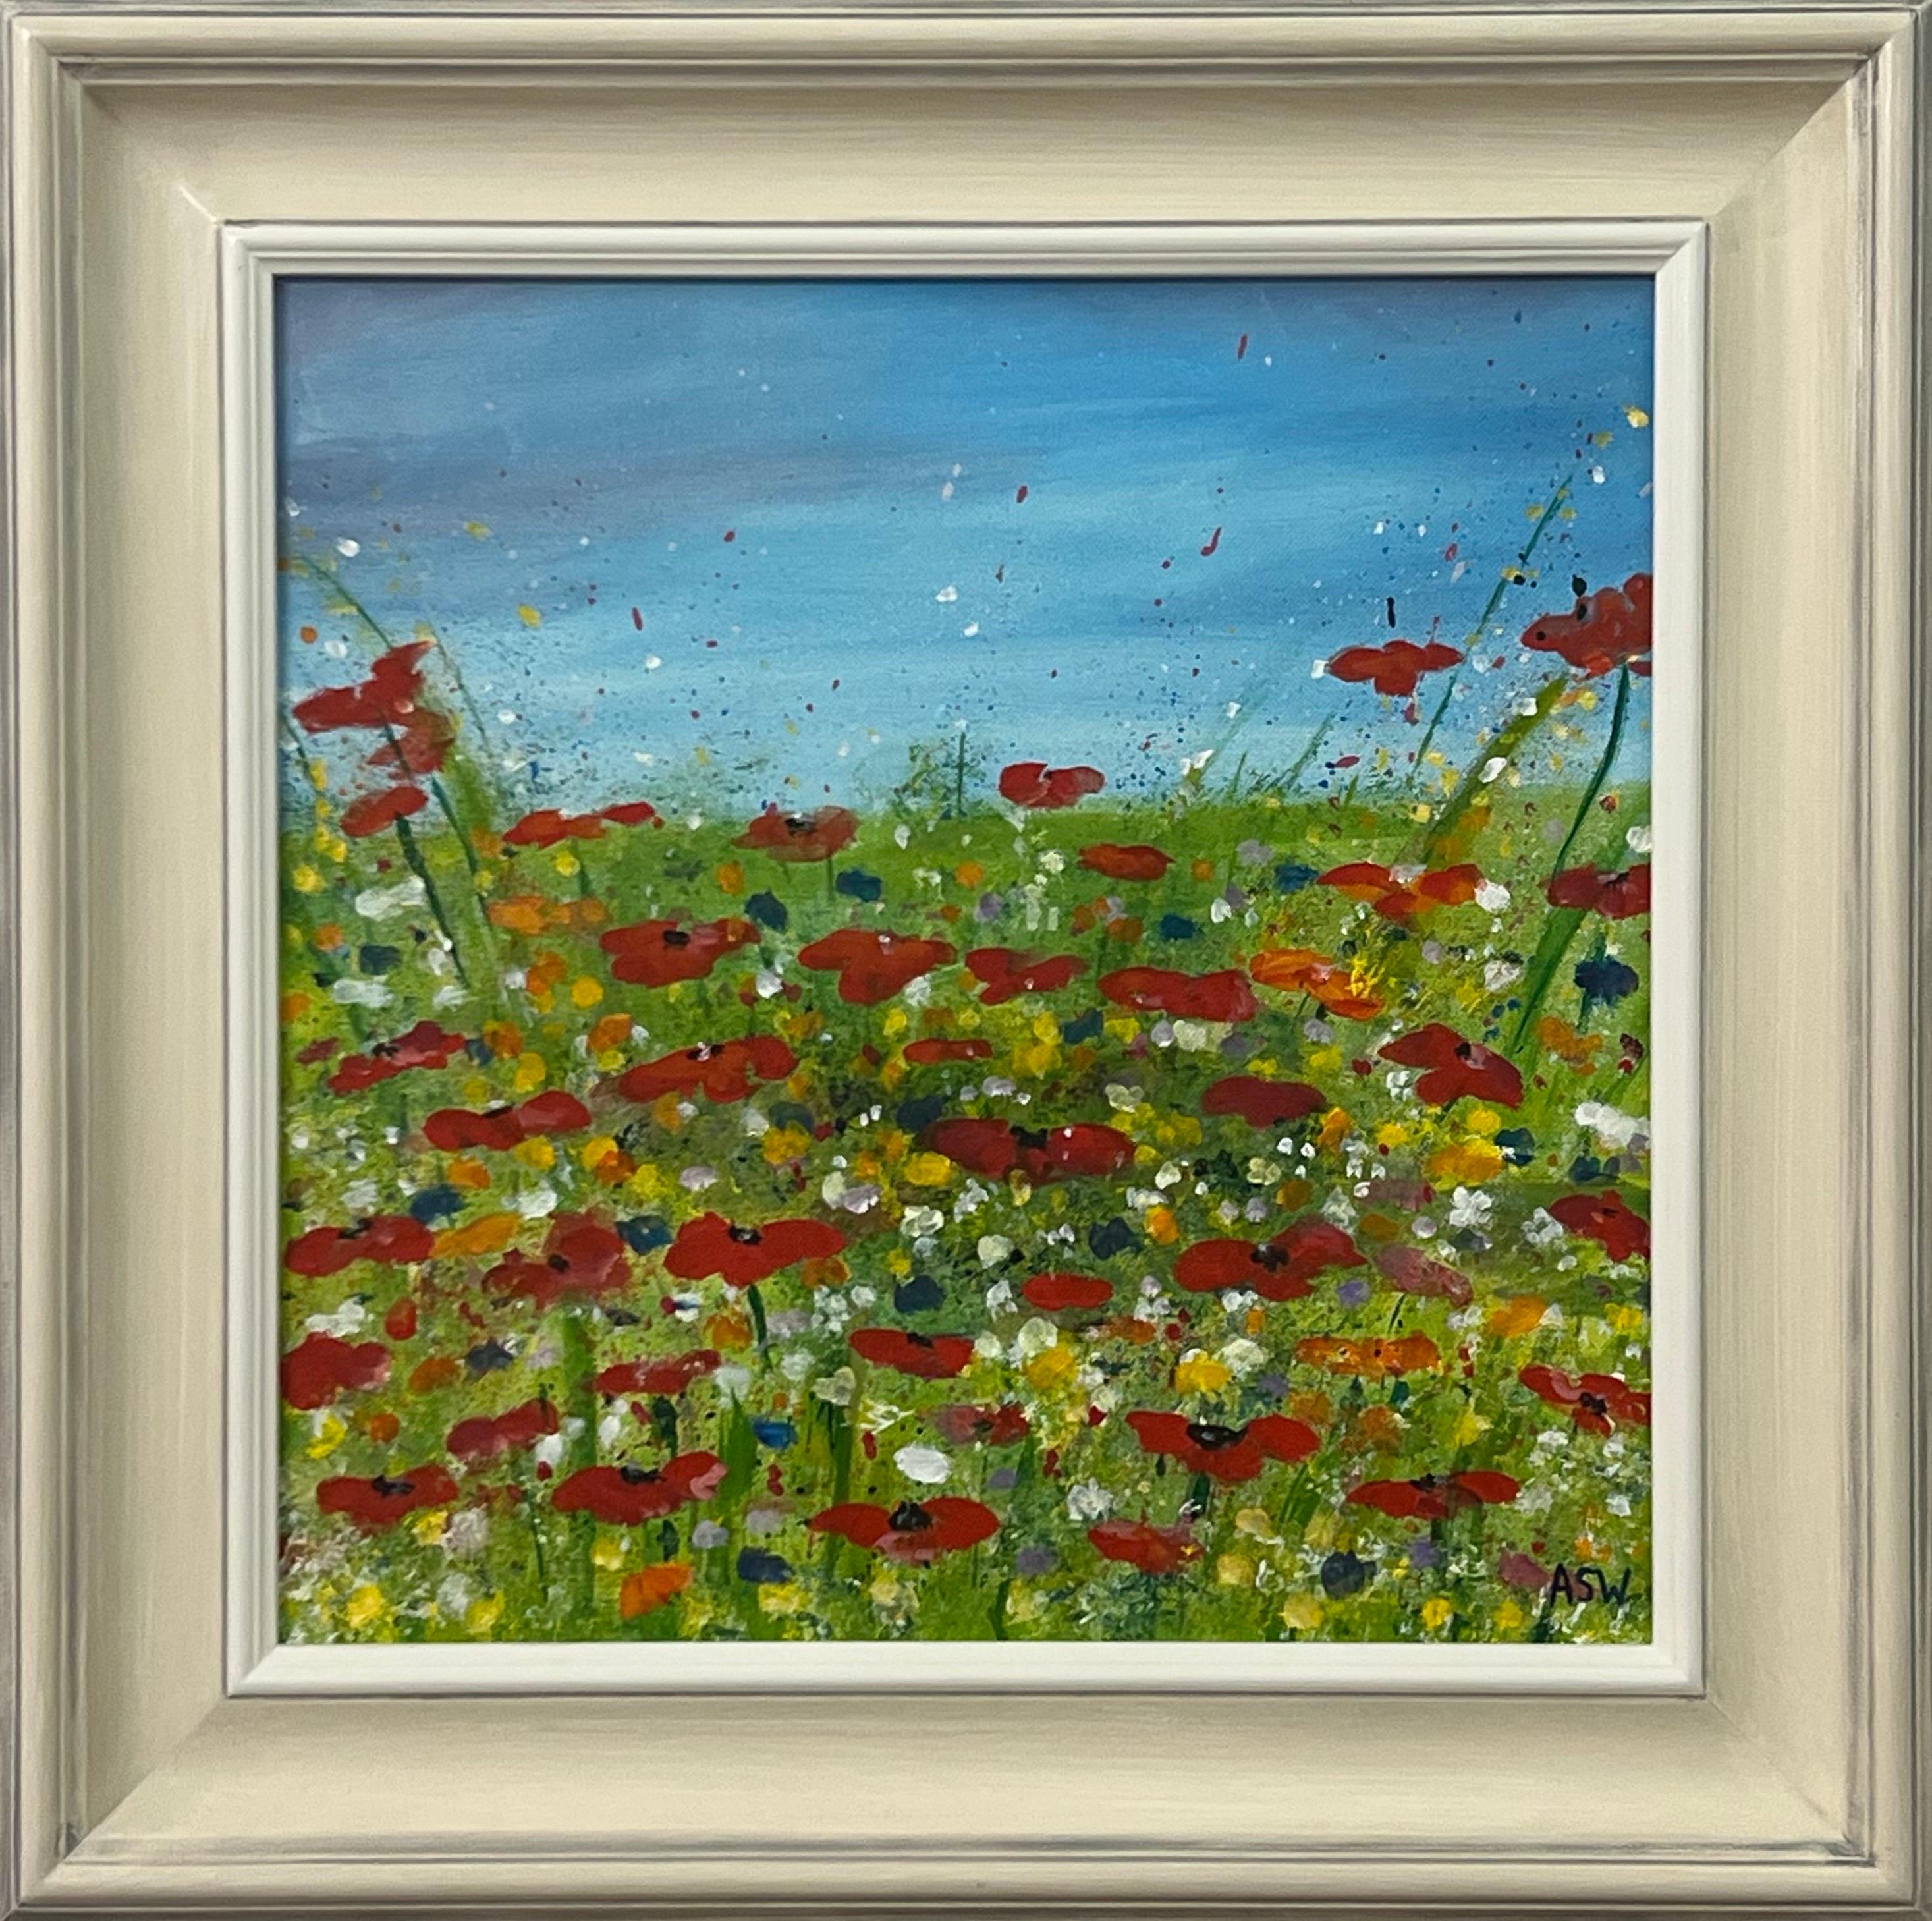 Abstract Painting Angela Wakefield - Fleurs de coquelicots rouges dans une prairie verte sauvage avec un ciel bleu par un artiste contemporain